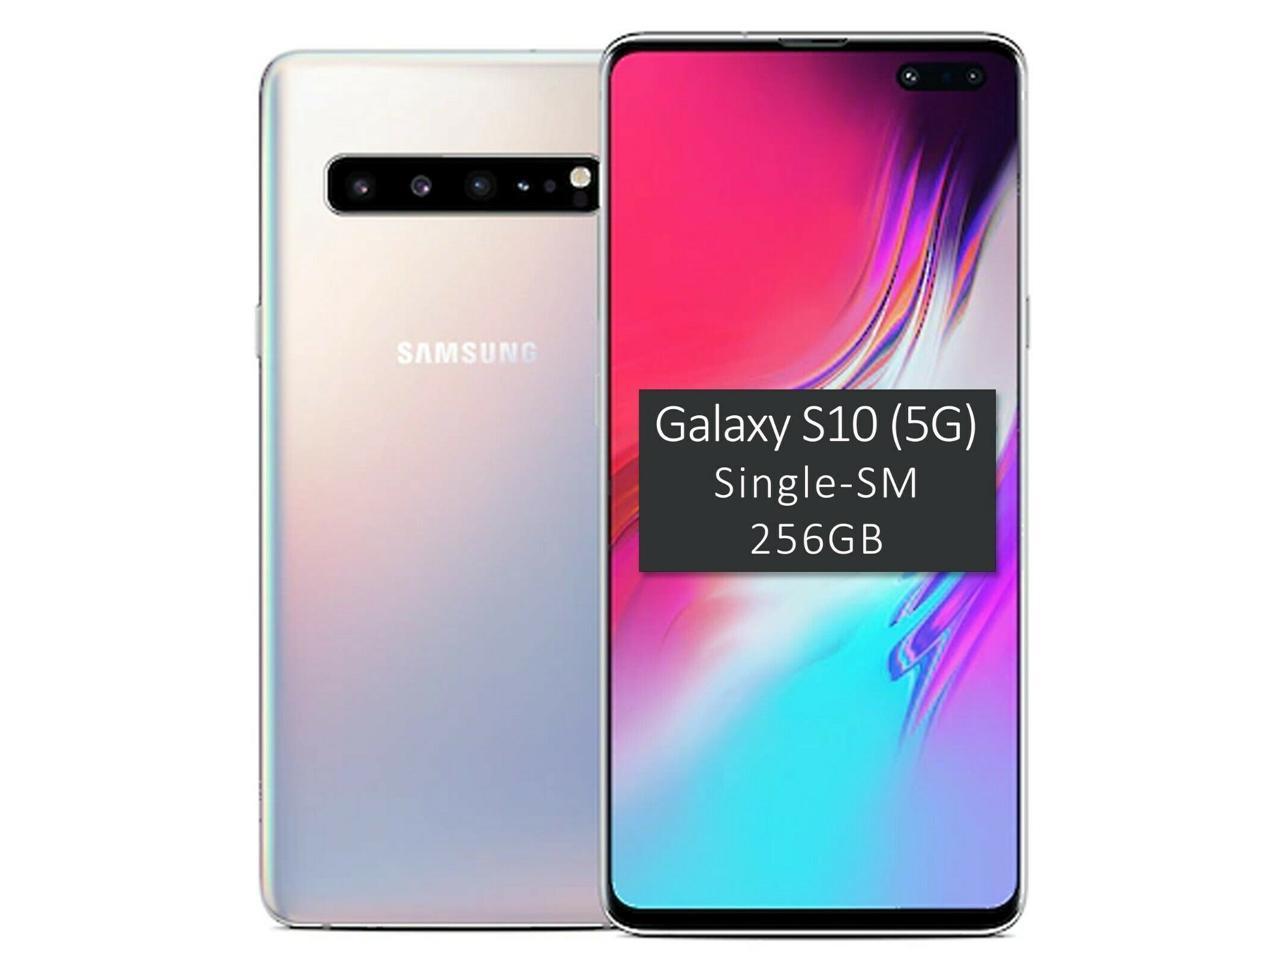 Samsung galaxy s24 256gb купить